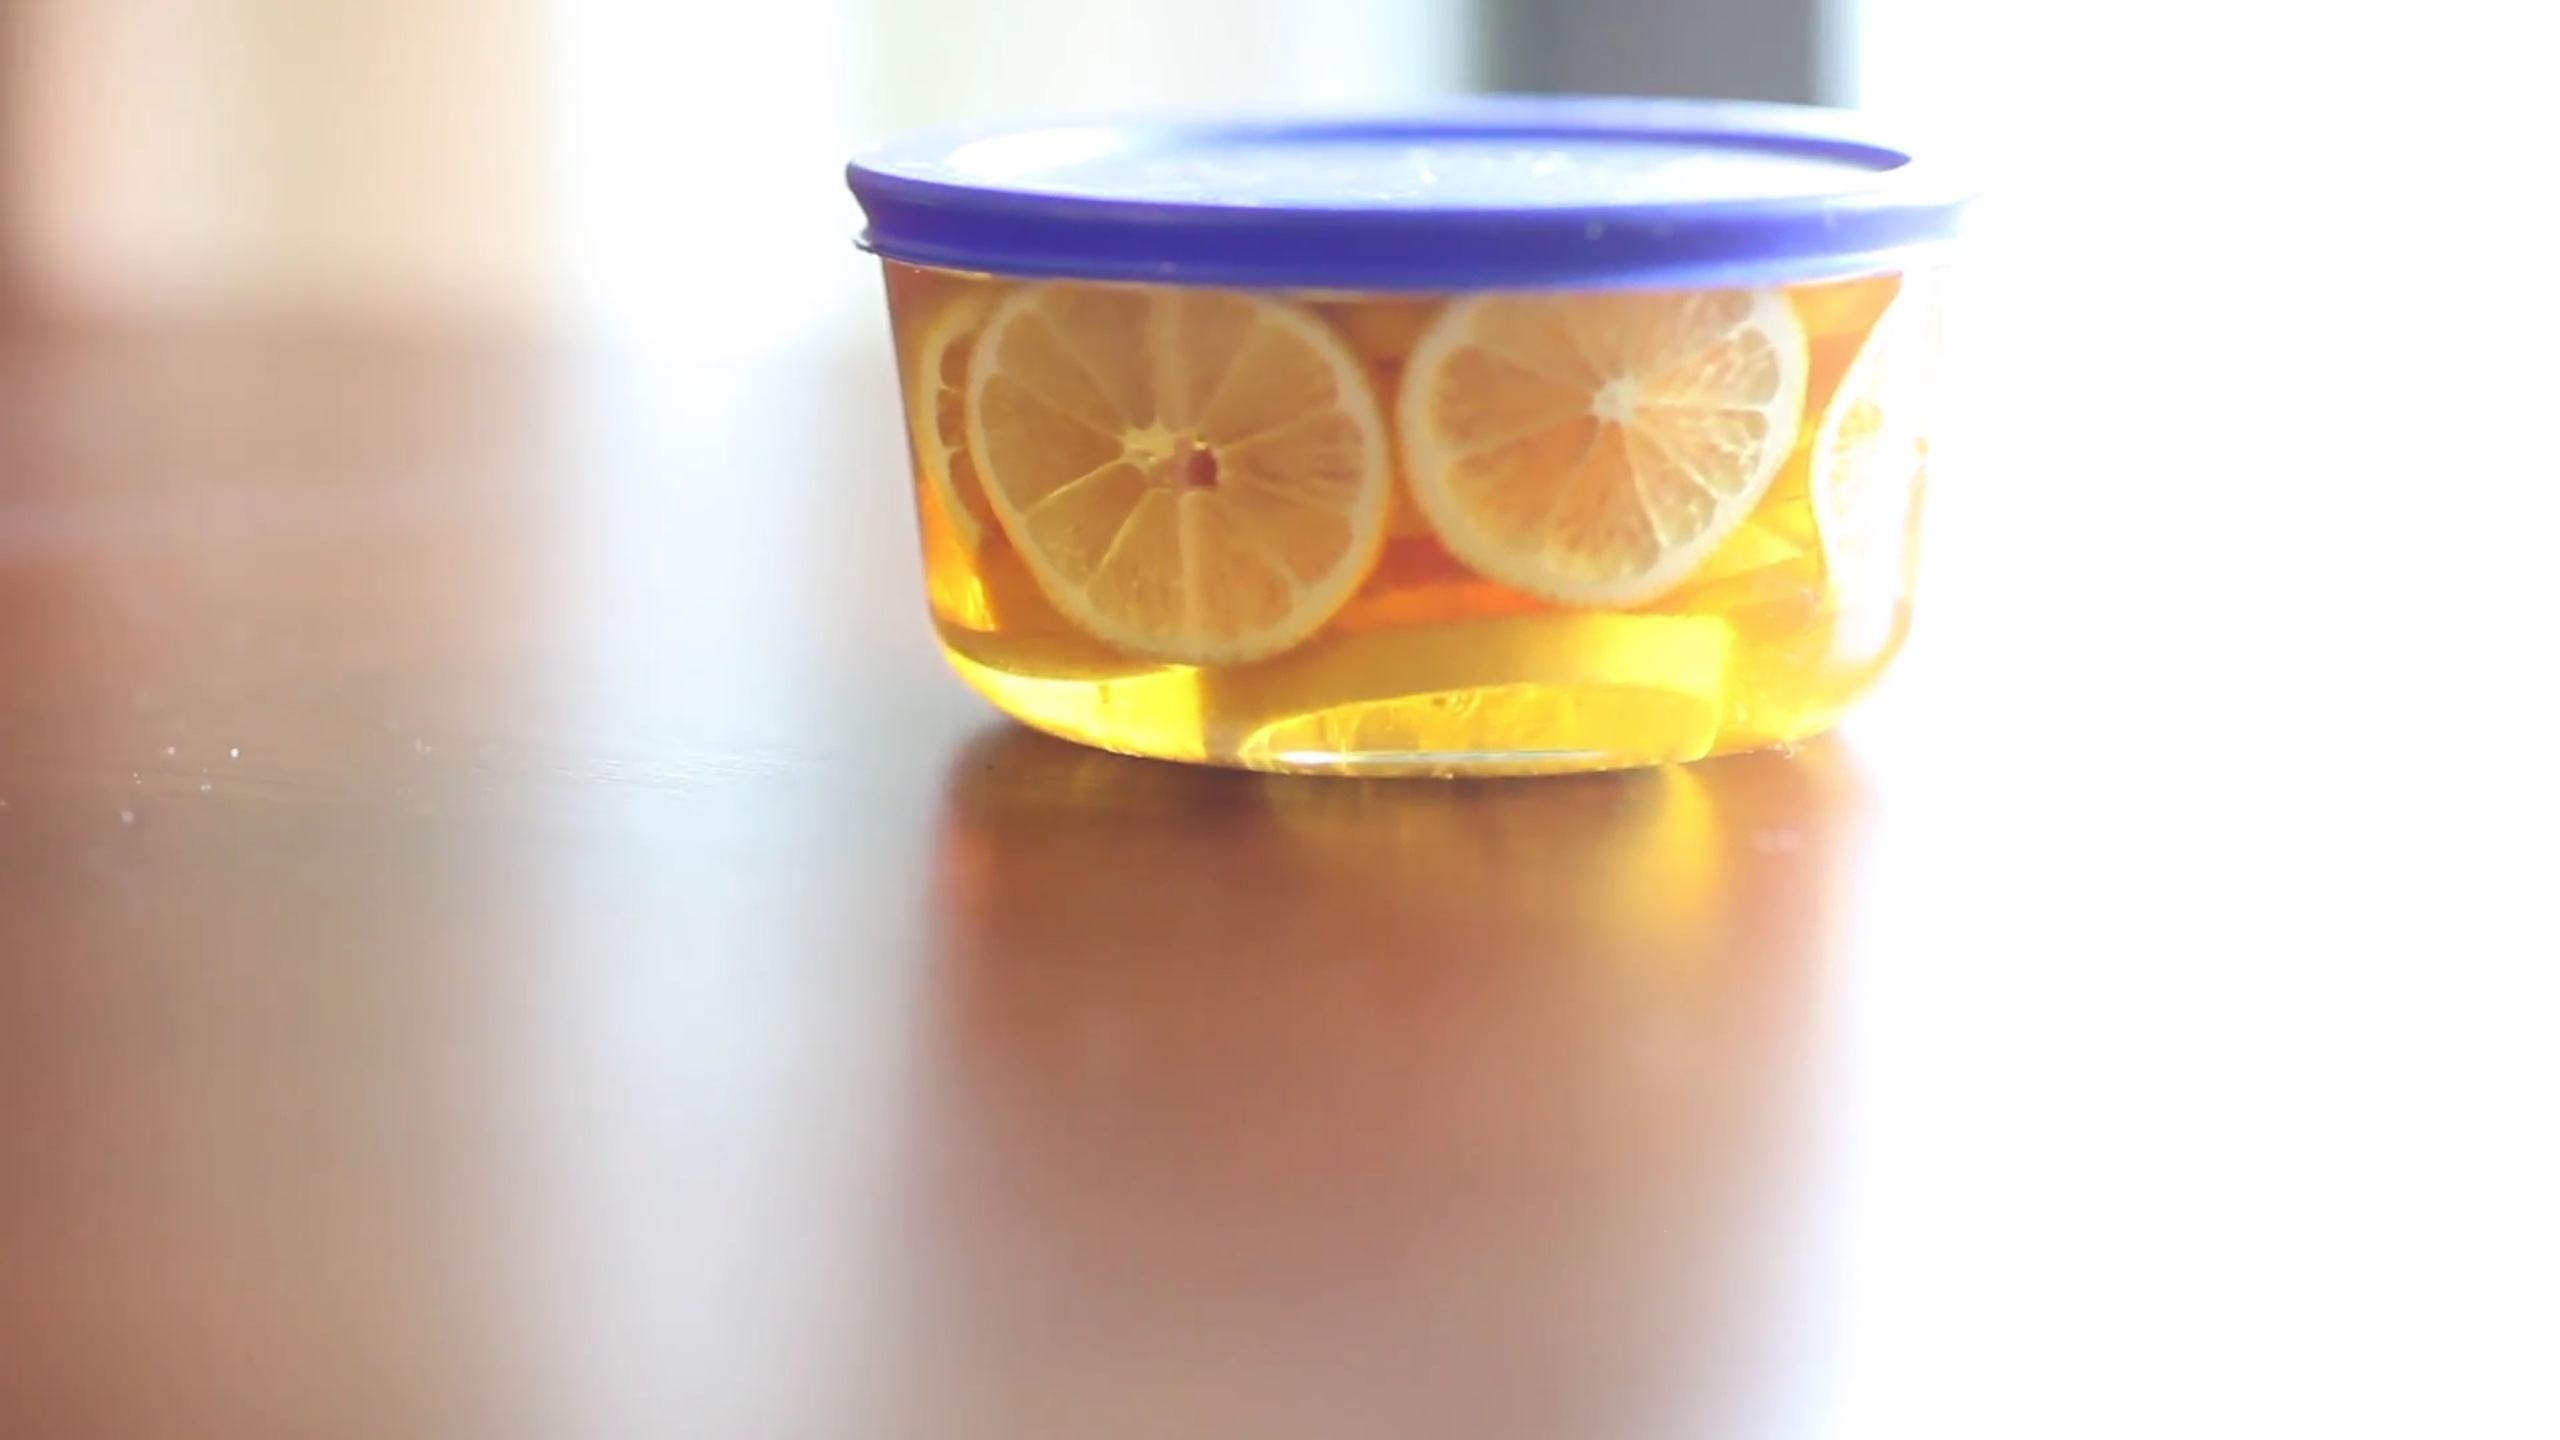 蜂蜜渍柠檬的做法